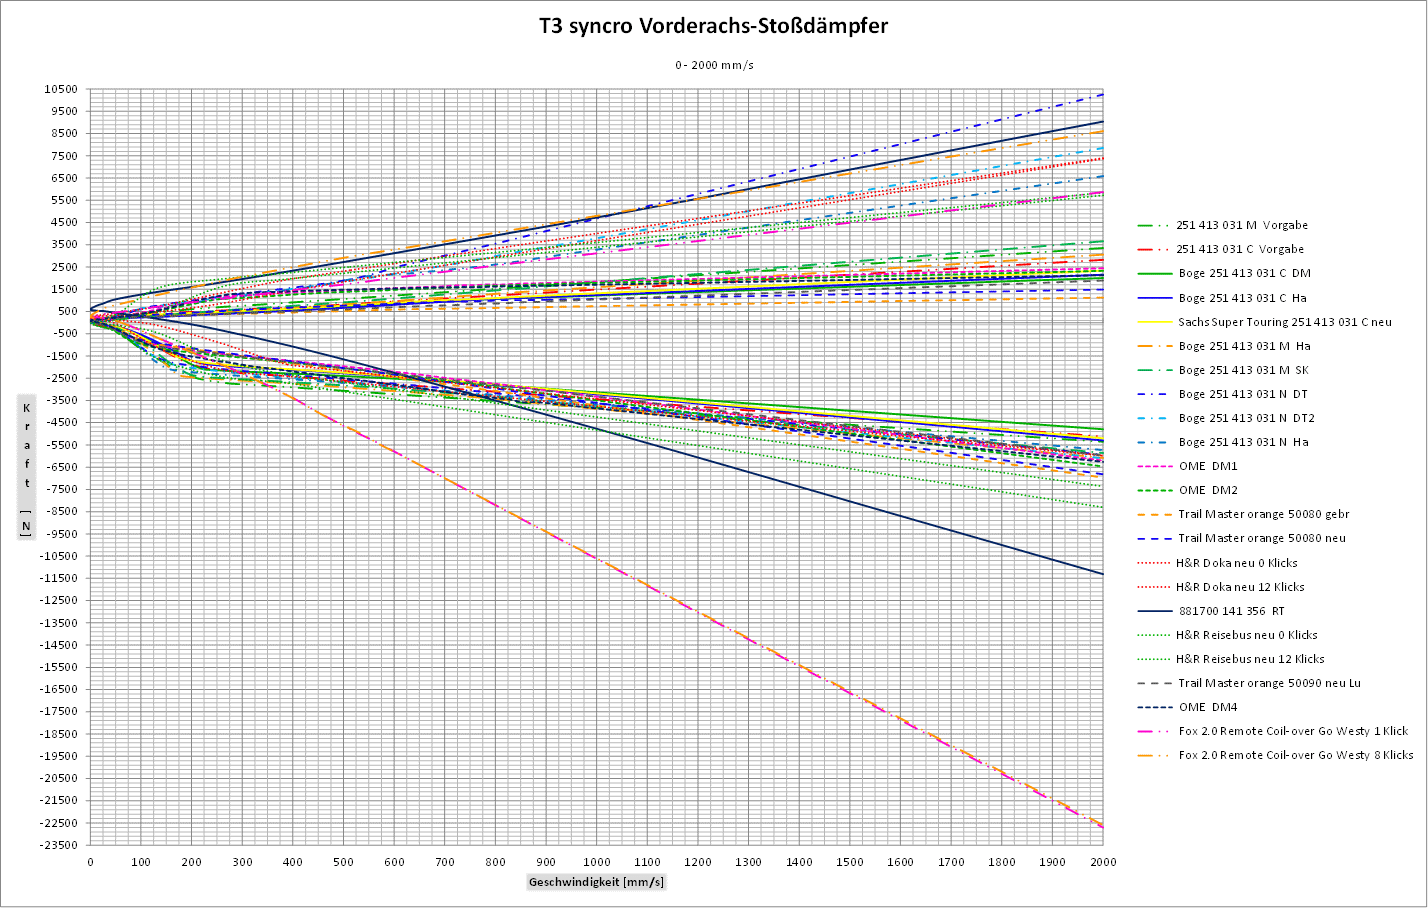 T3 syncro Vorderachs-Stossdaempfer Diagramm 0-2000+.gif